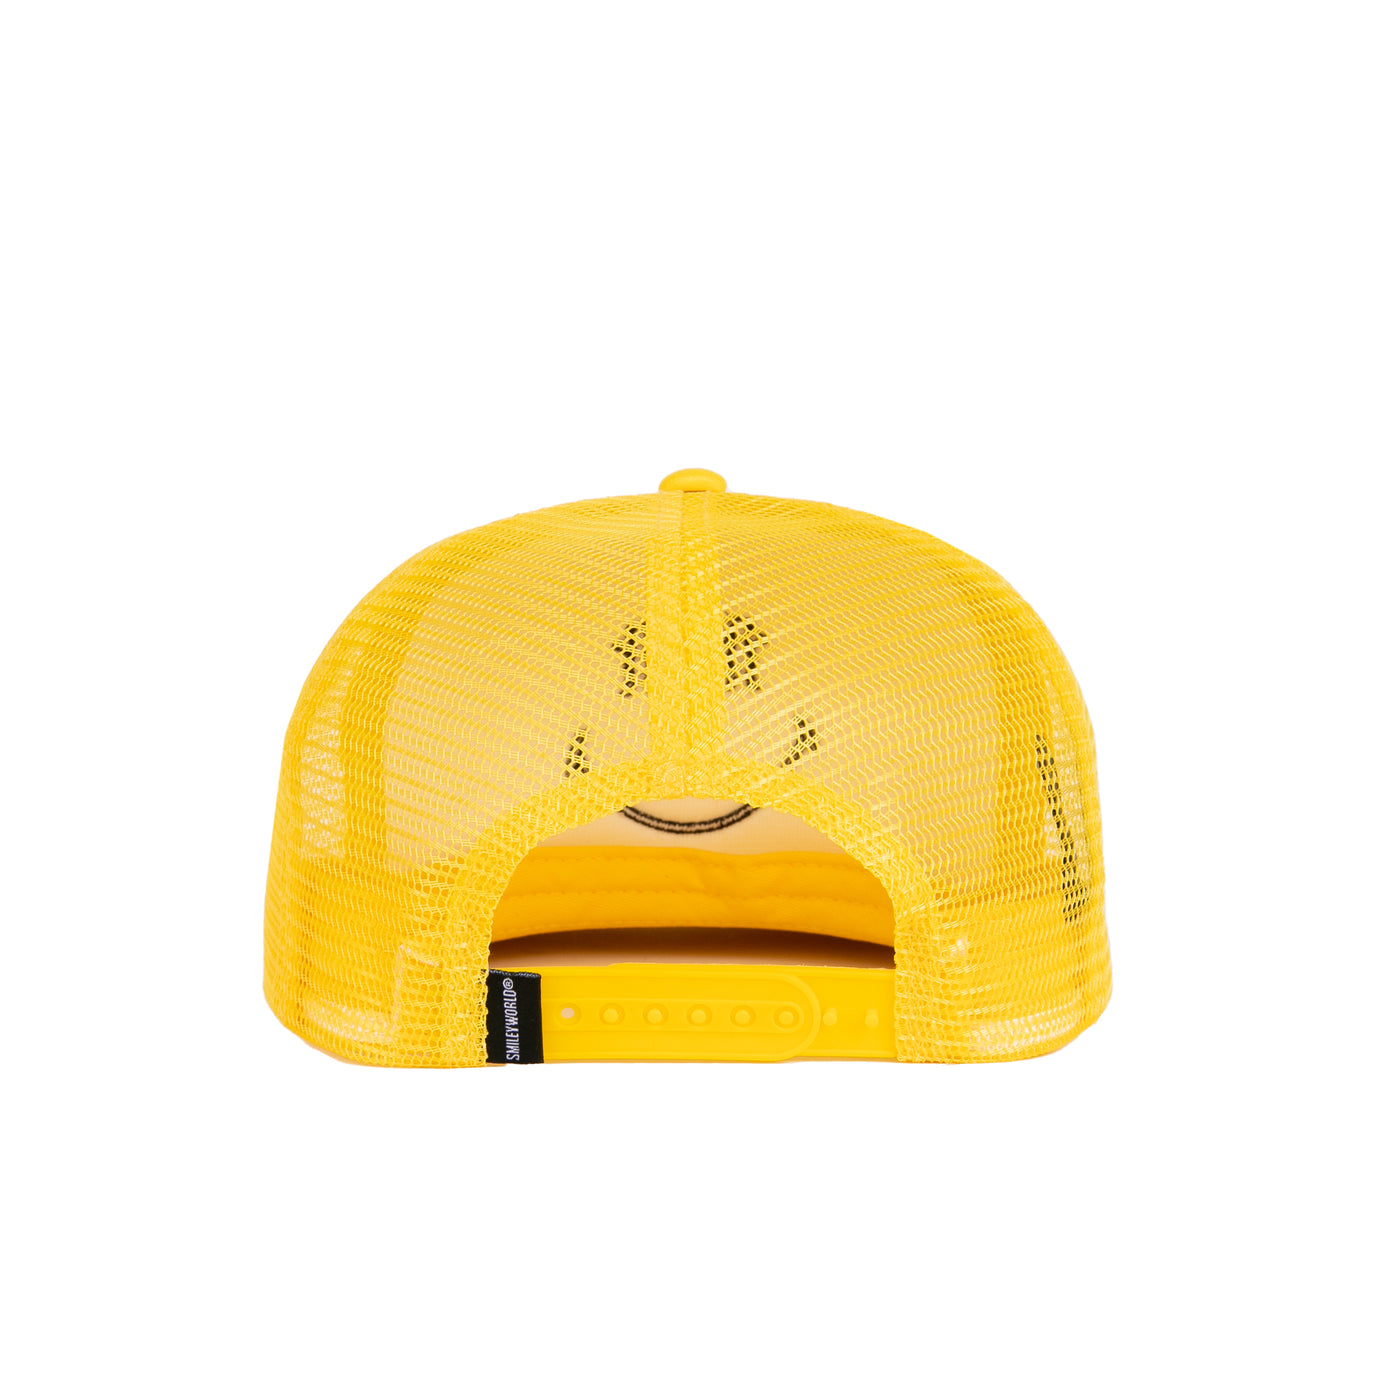 SMILEYWORLD Big Smile Trucker Snapback Hat -Yellow